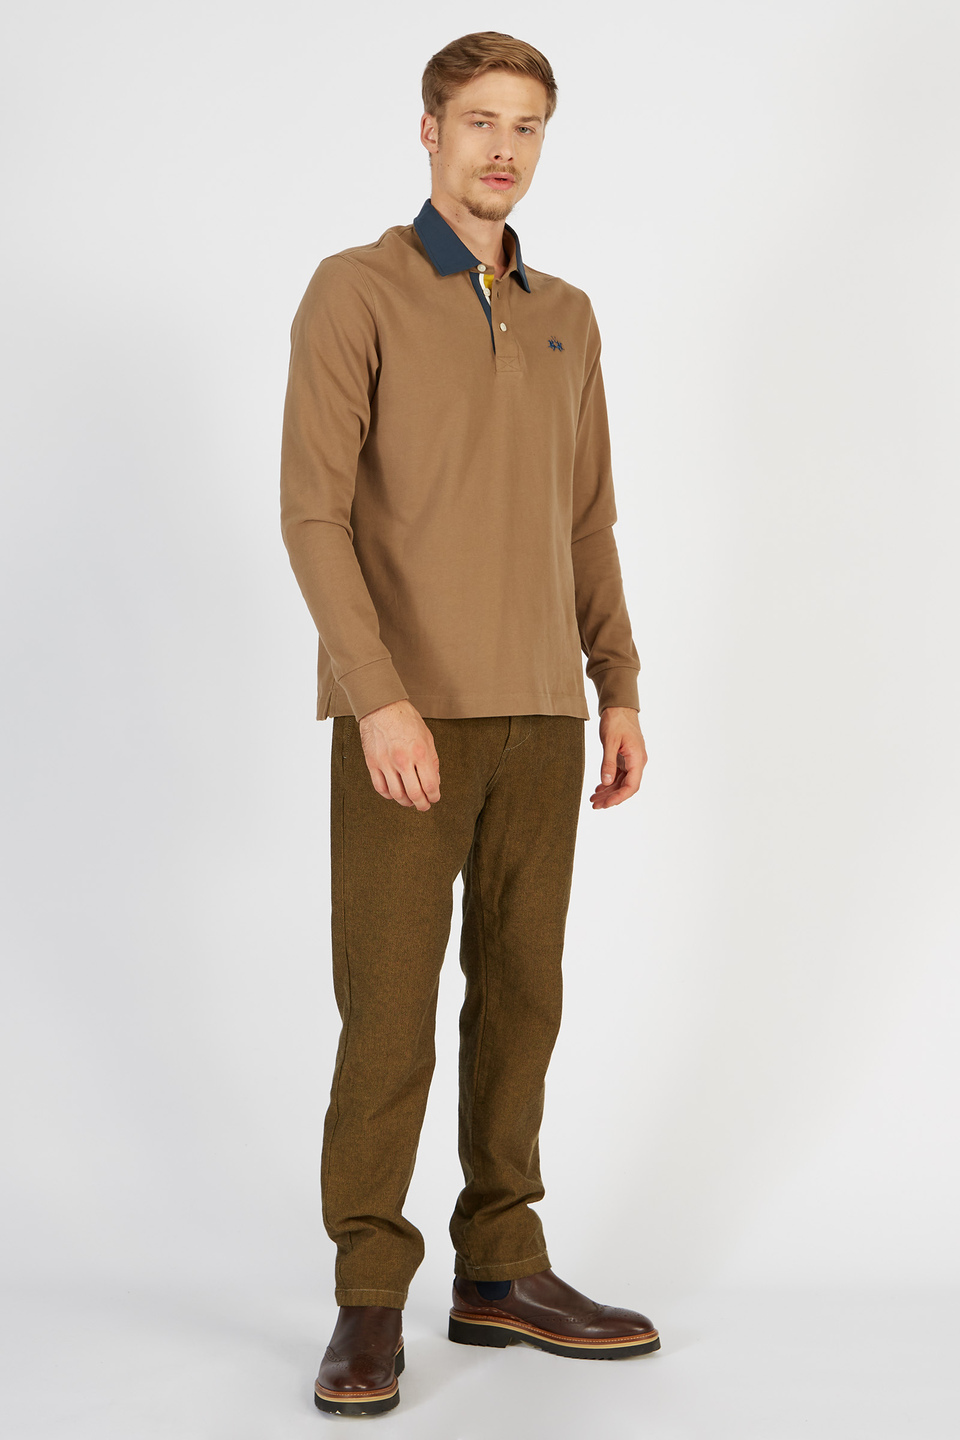 Polo da uomo a maniche lunghe in cotone jersey regular fit | La Martina - Official Online Shop